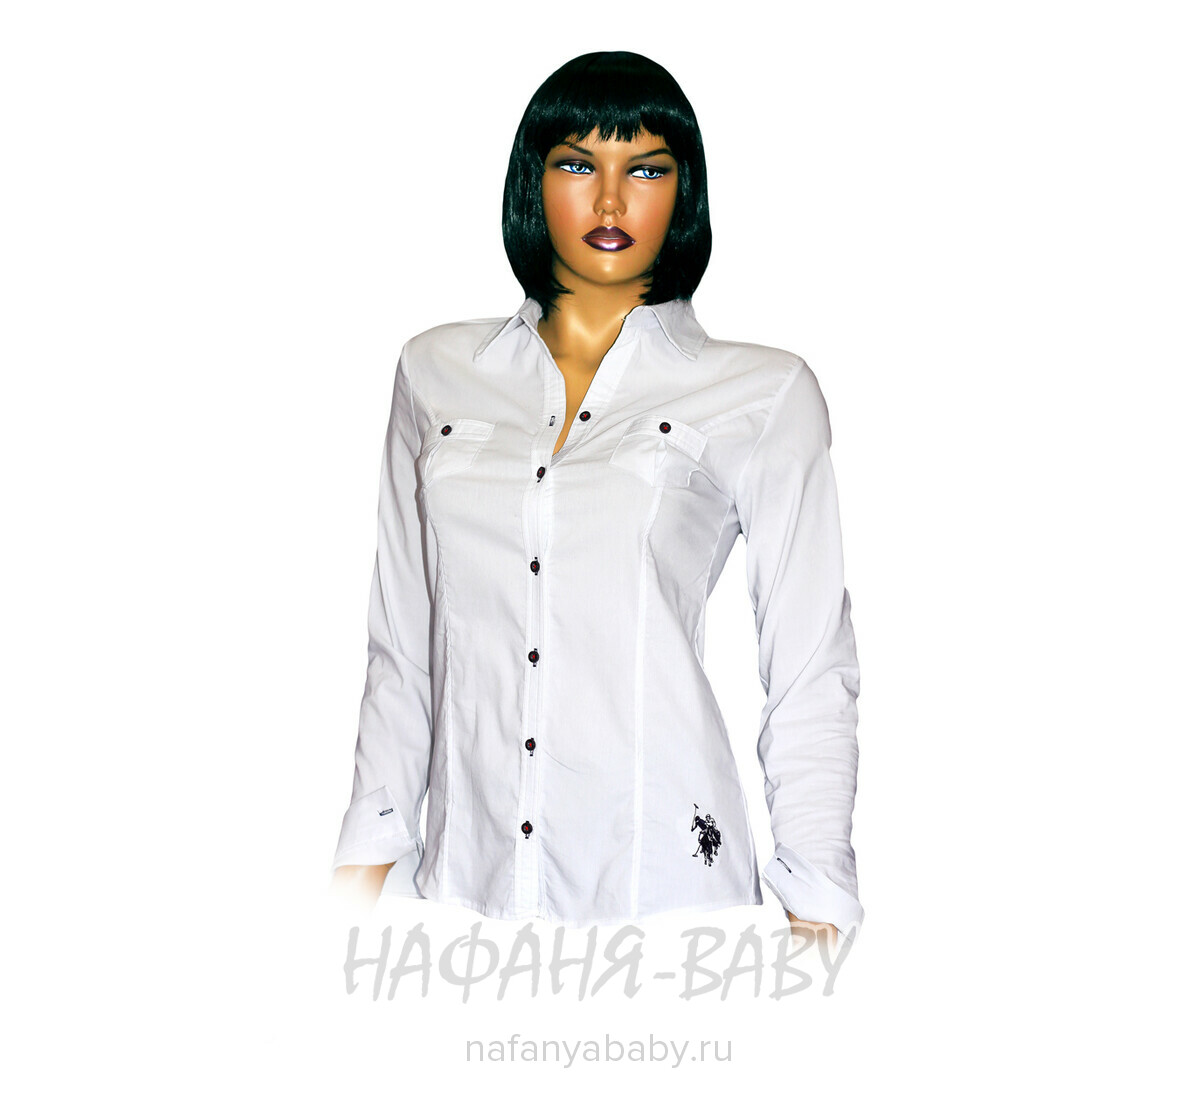 Стильная блузка с длинным рукавом MINE`NS POLO, купить в интернет магазине Нафаня. арт: 3480.